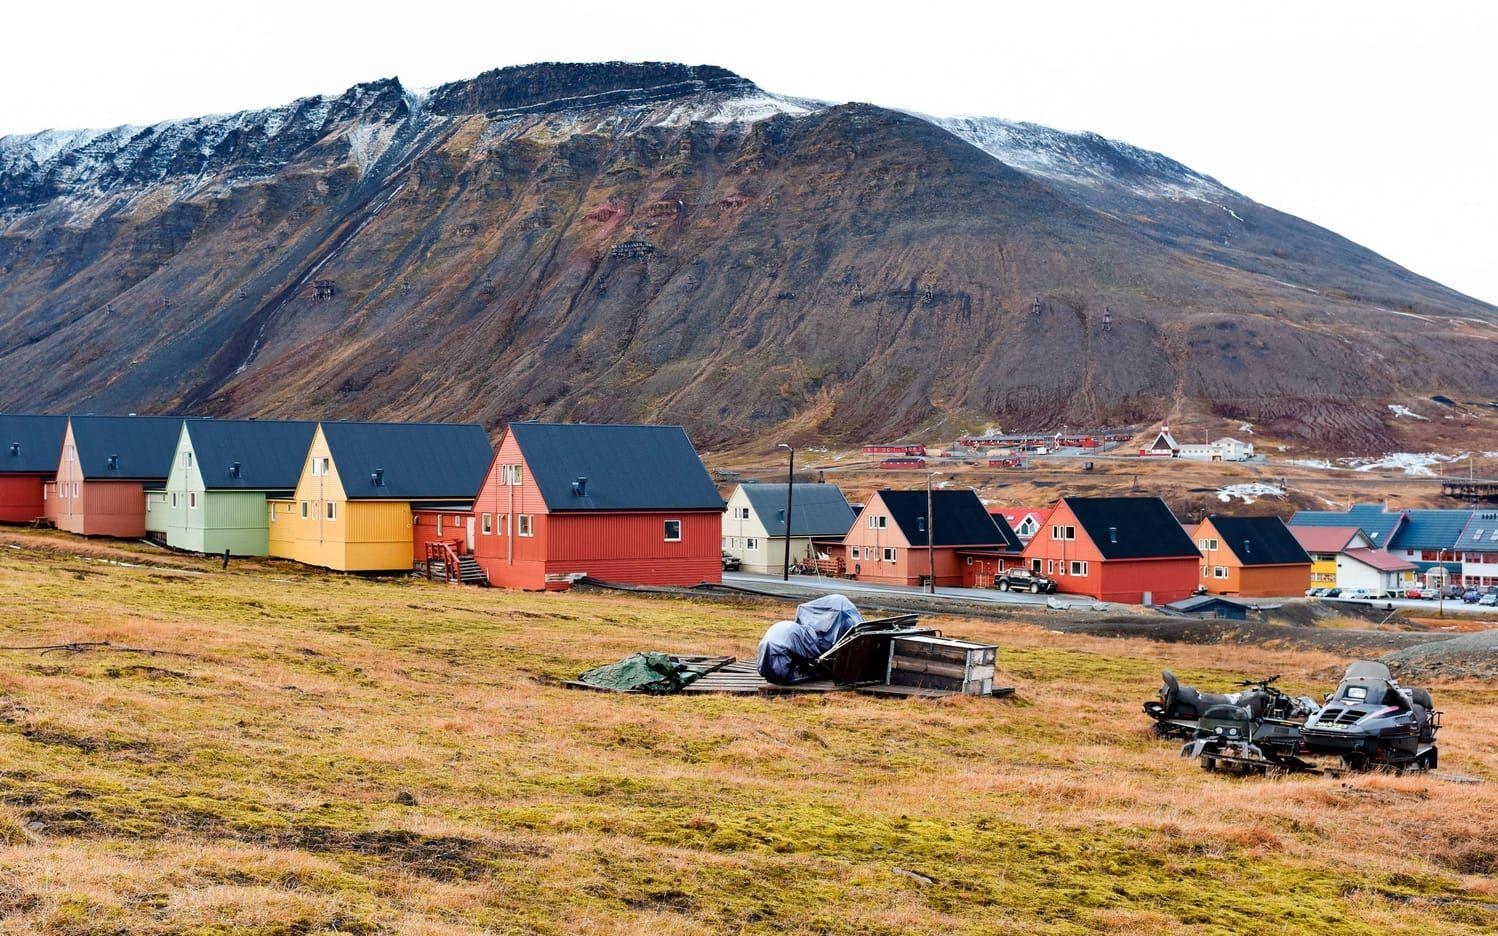 Extremväder. Det är oktober, och snön borde redan ligga på marken. Men i stället är det högsommartemperatur i Longyearbyen.